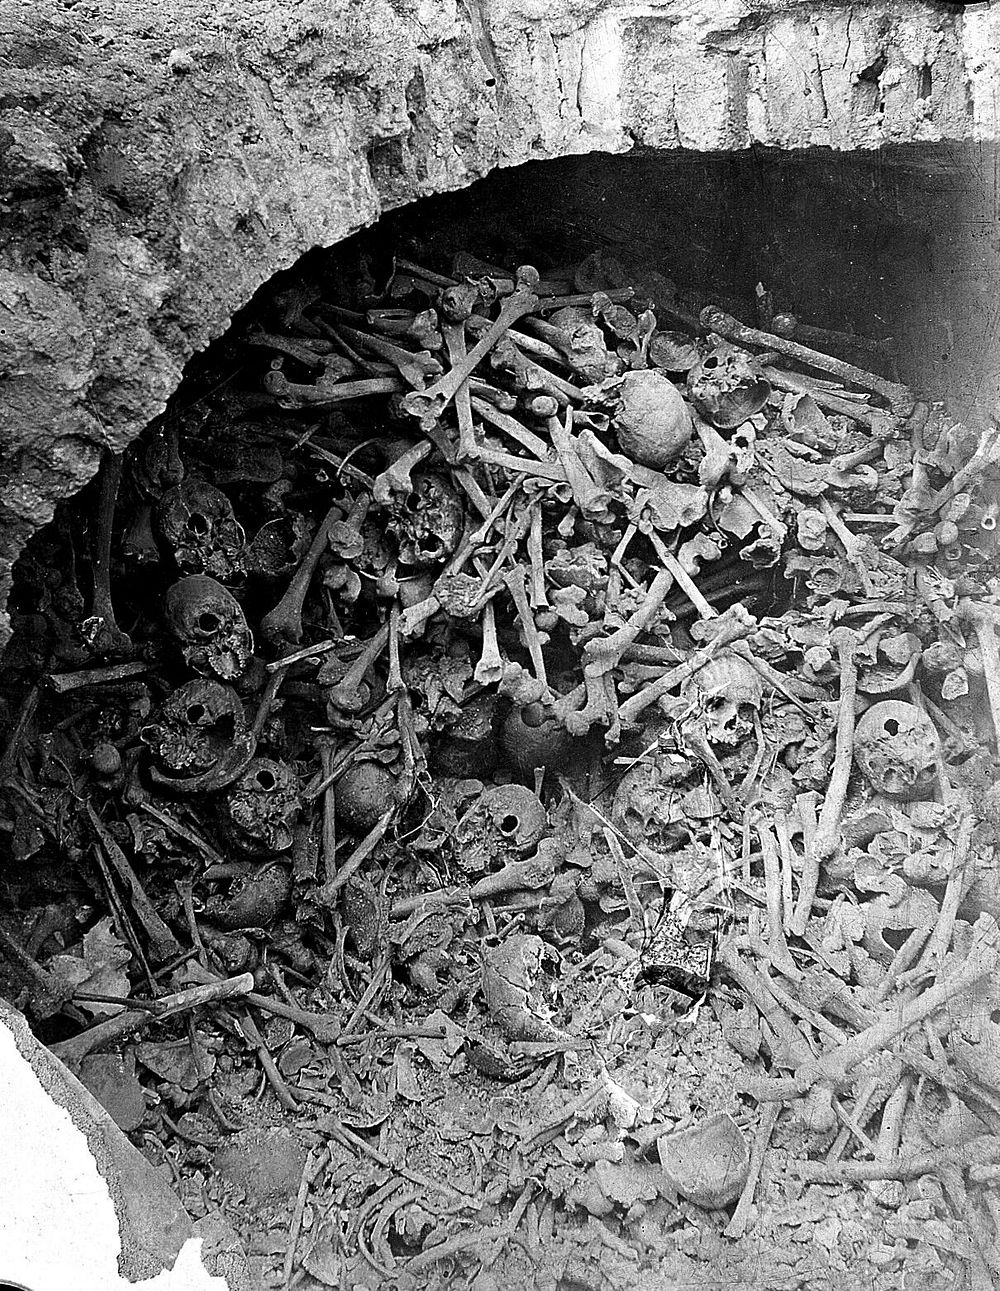 Human bones and skulls in a brick-built pit. Photograph.